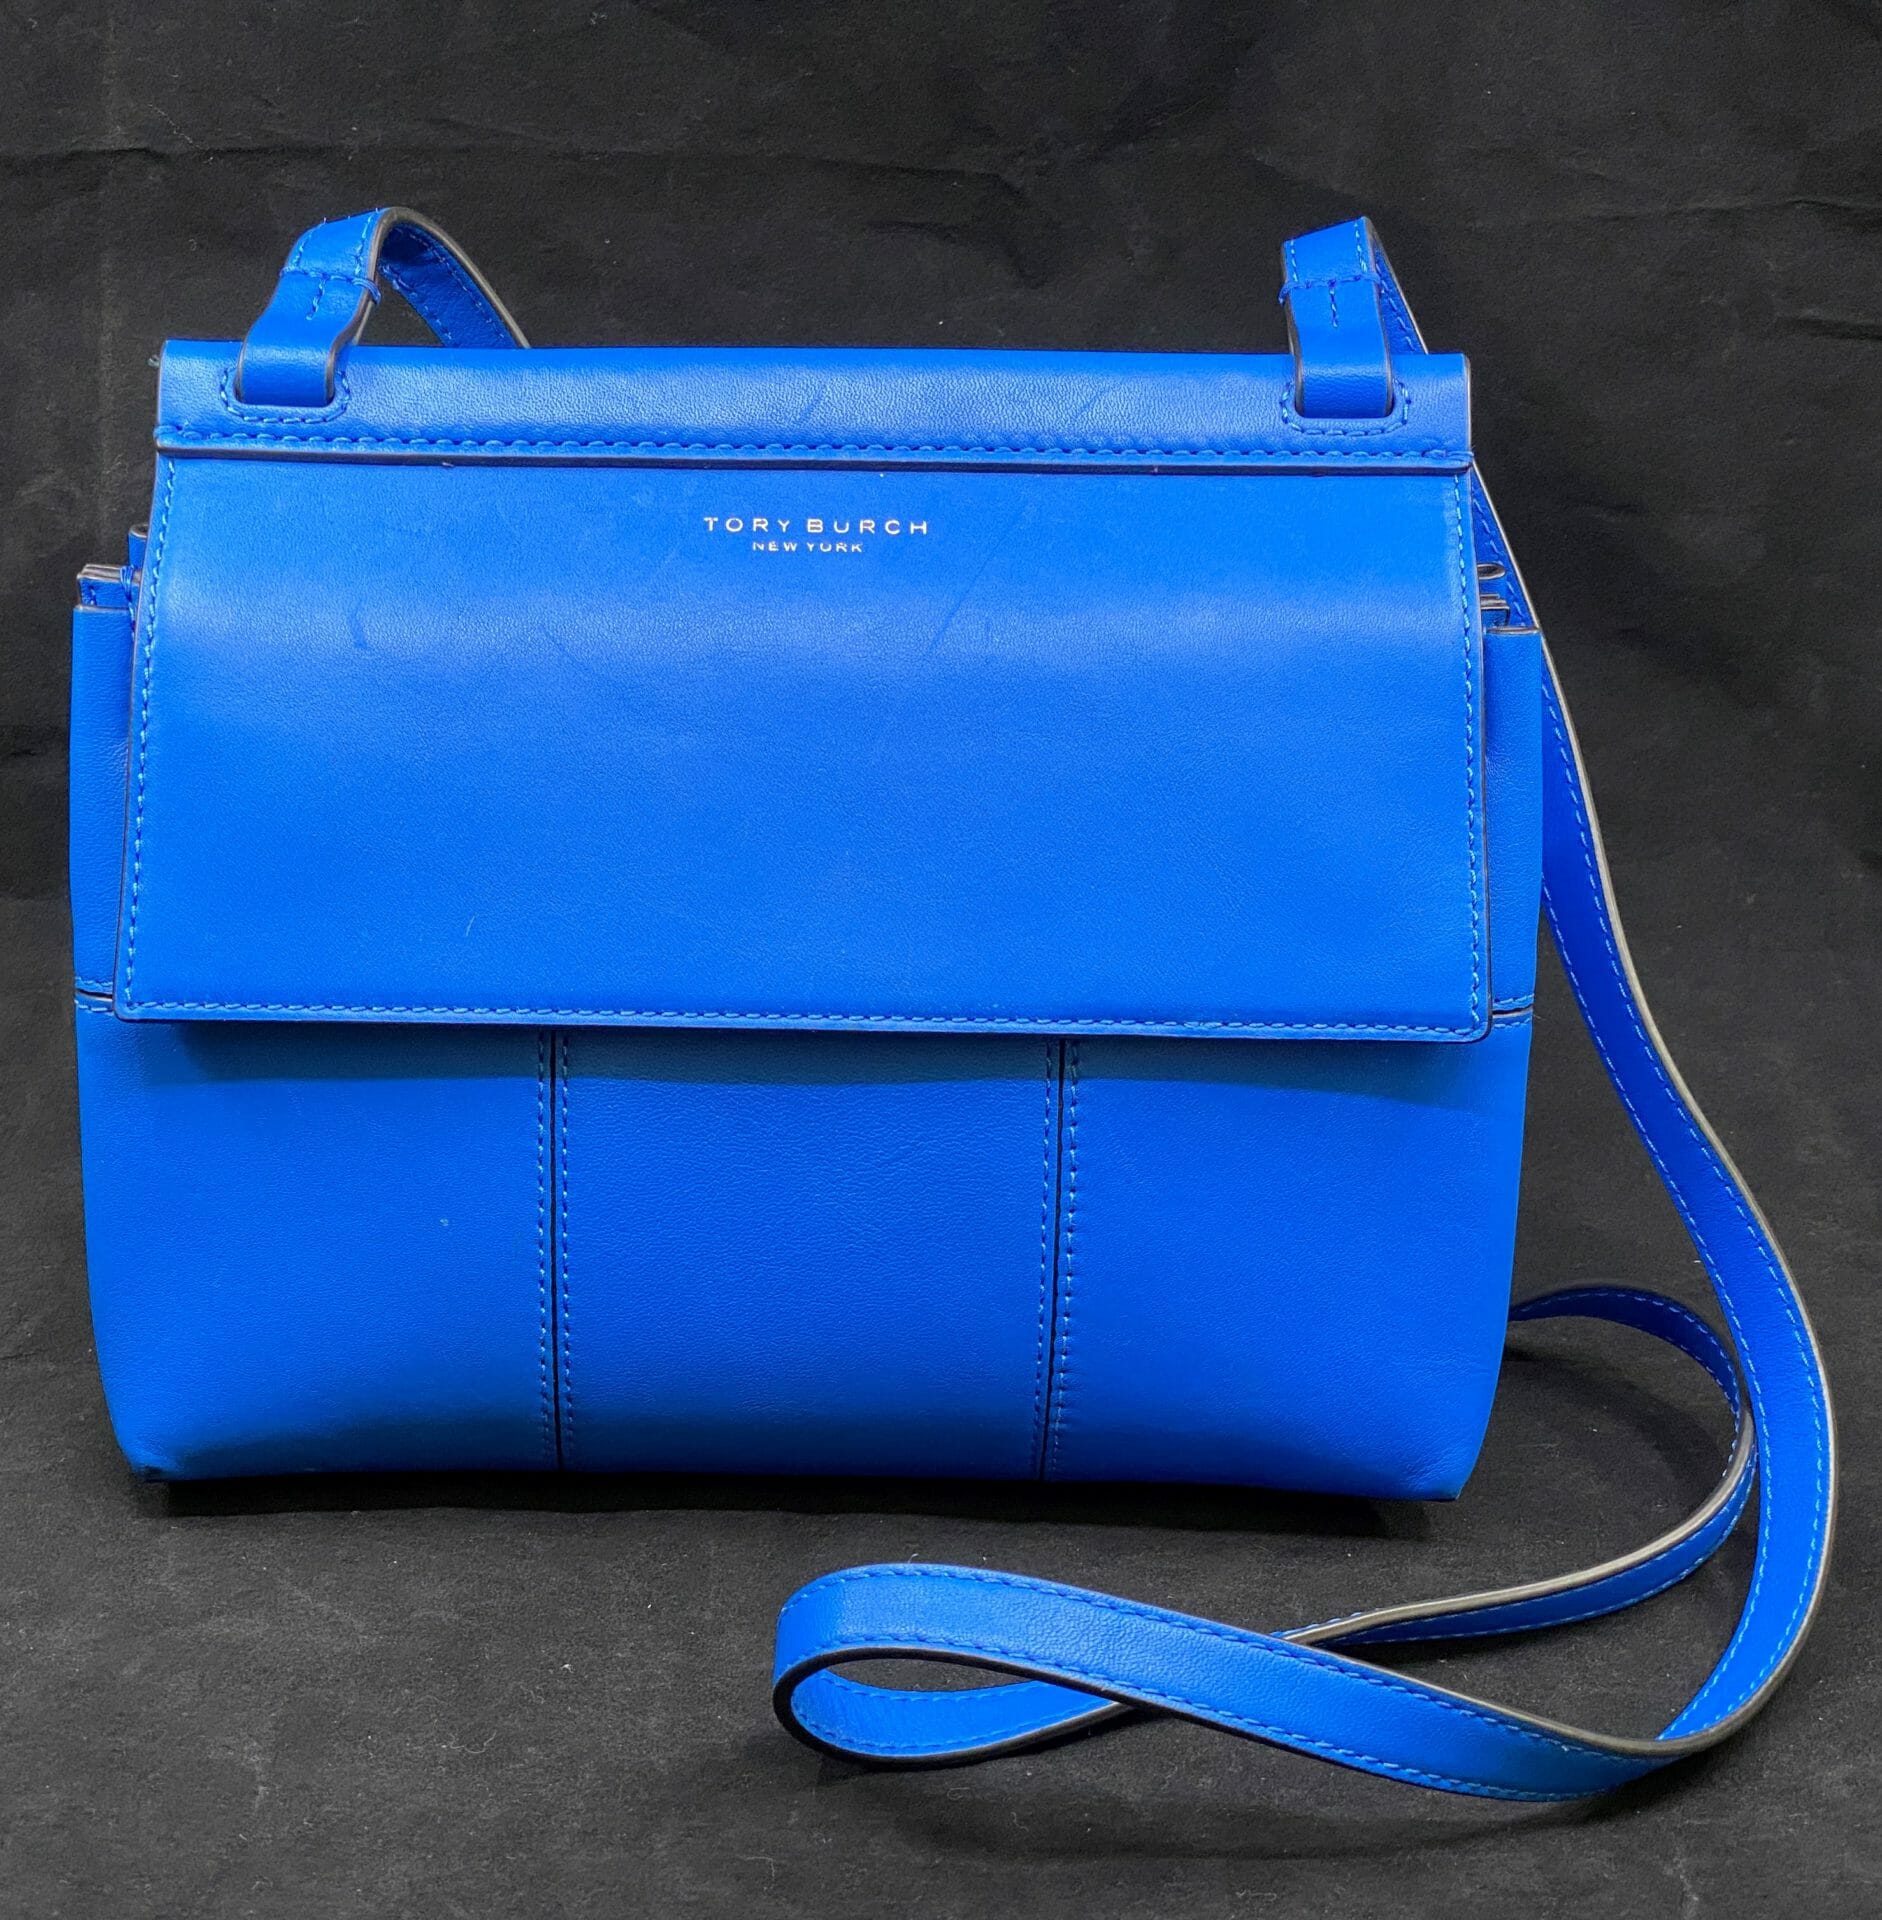 Tory Burch Block T Crossbody Handbag in Galleria Blue - L. Oppleman